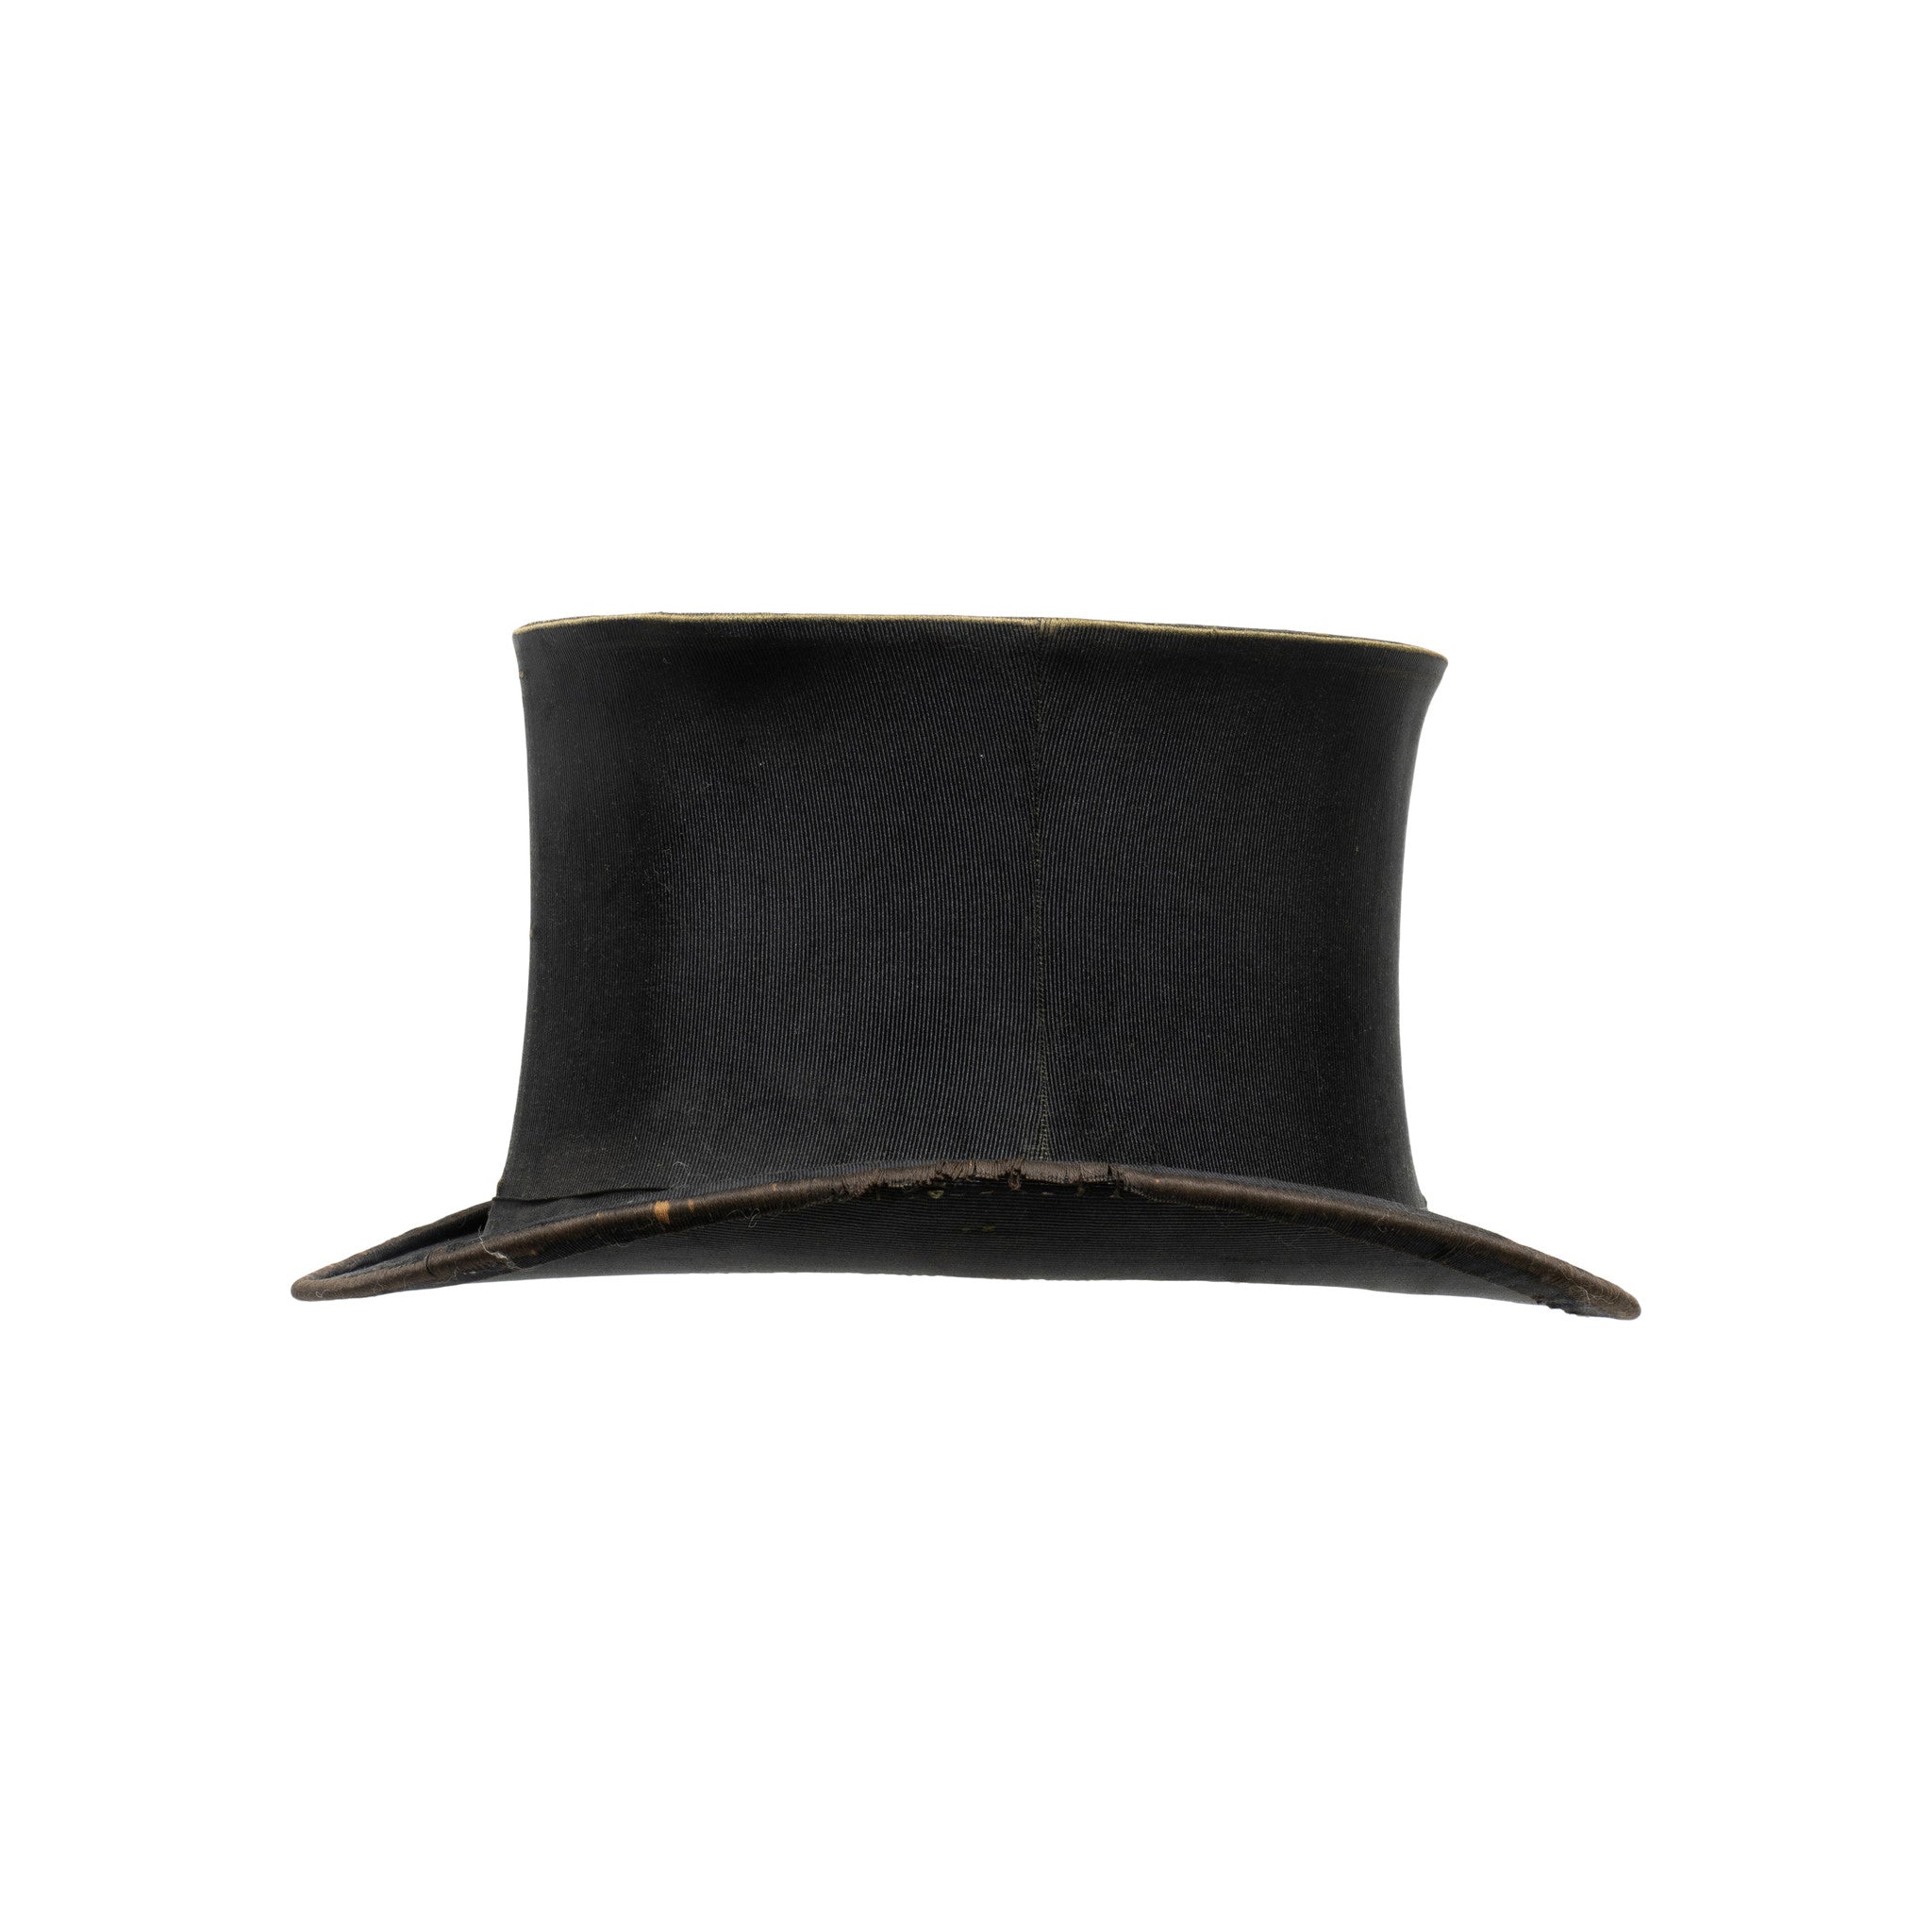 Silk Top Hat